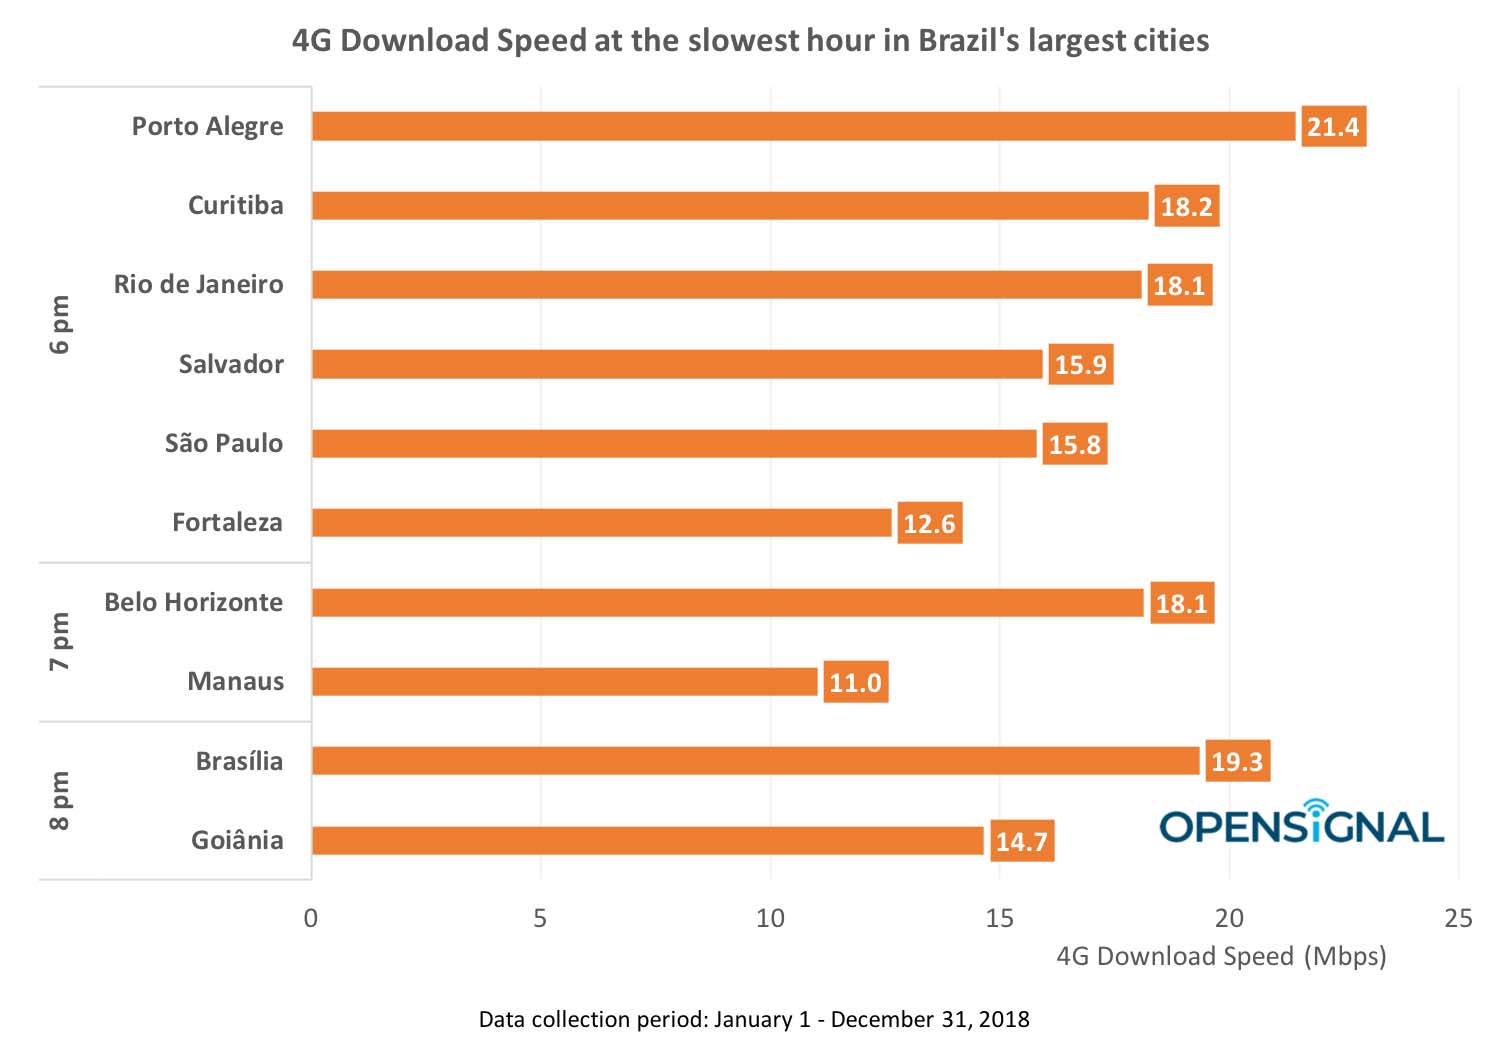 Horário mais lento do 4G nas maiores cidades do Brasil